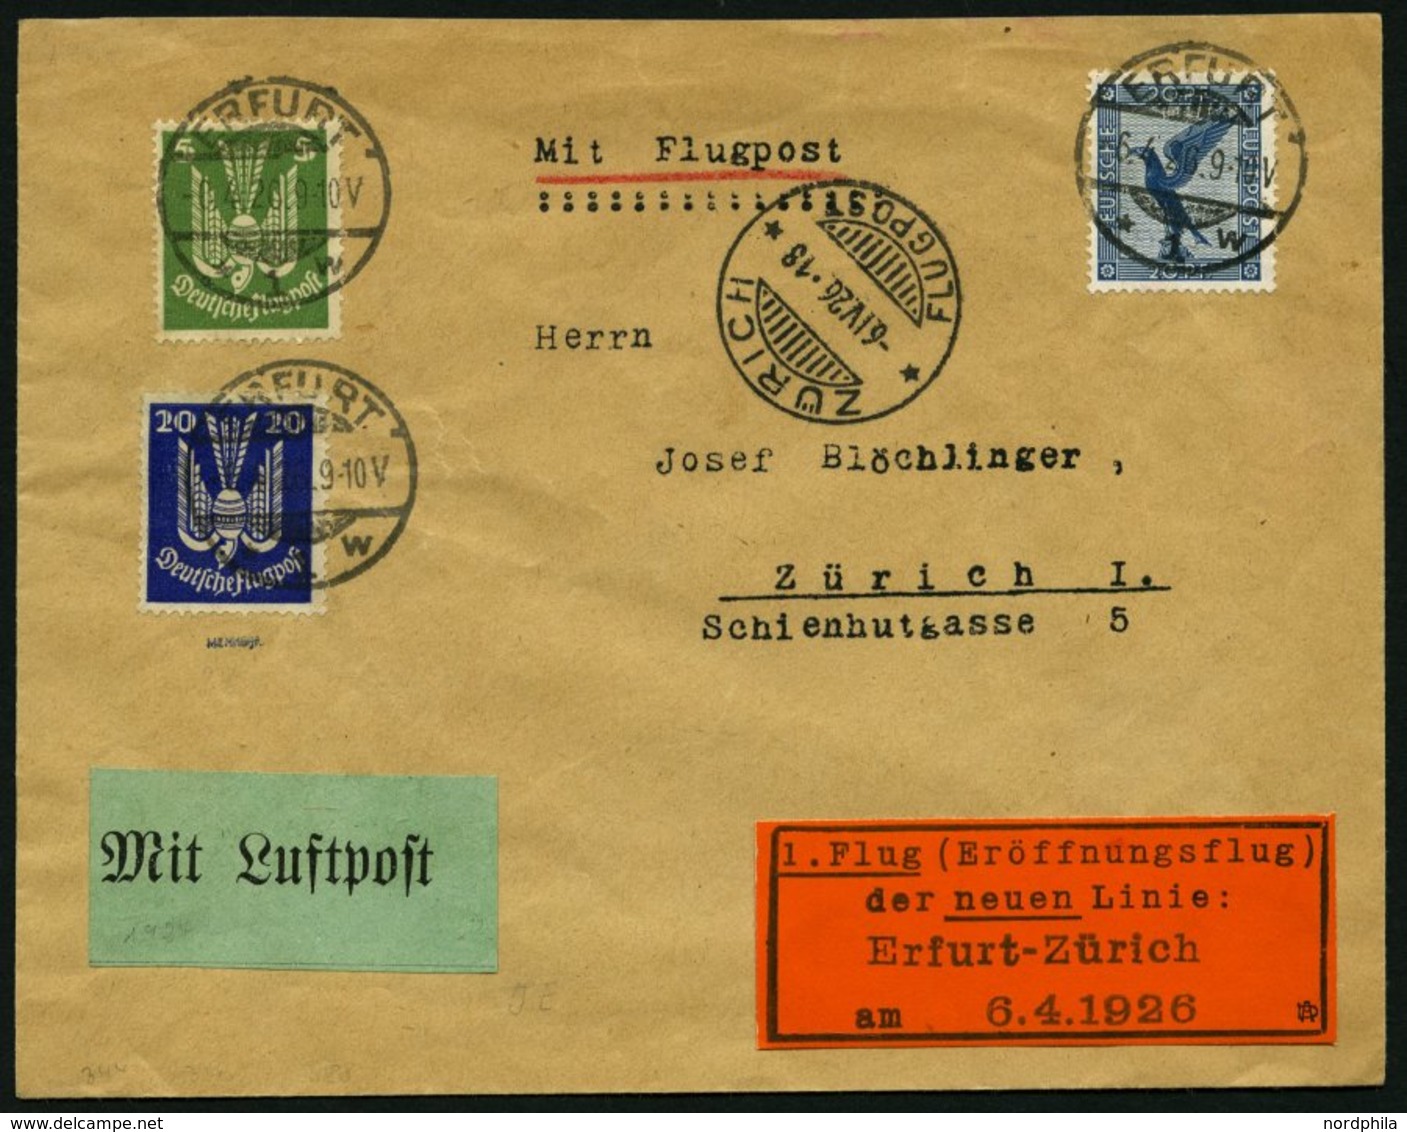 ERST-UND ERÖFFNUNGSFLÜGE 26.7.09 BRIEF, 6.4.1926, Erfurt - Zürich, Prachtbrief, RR! - Zeppelin